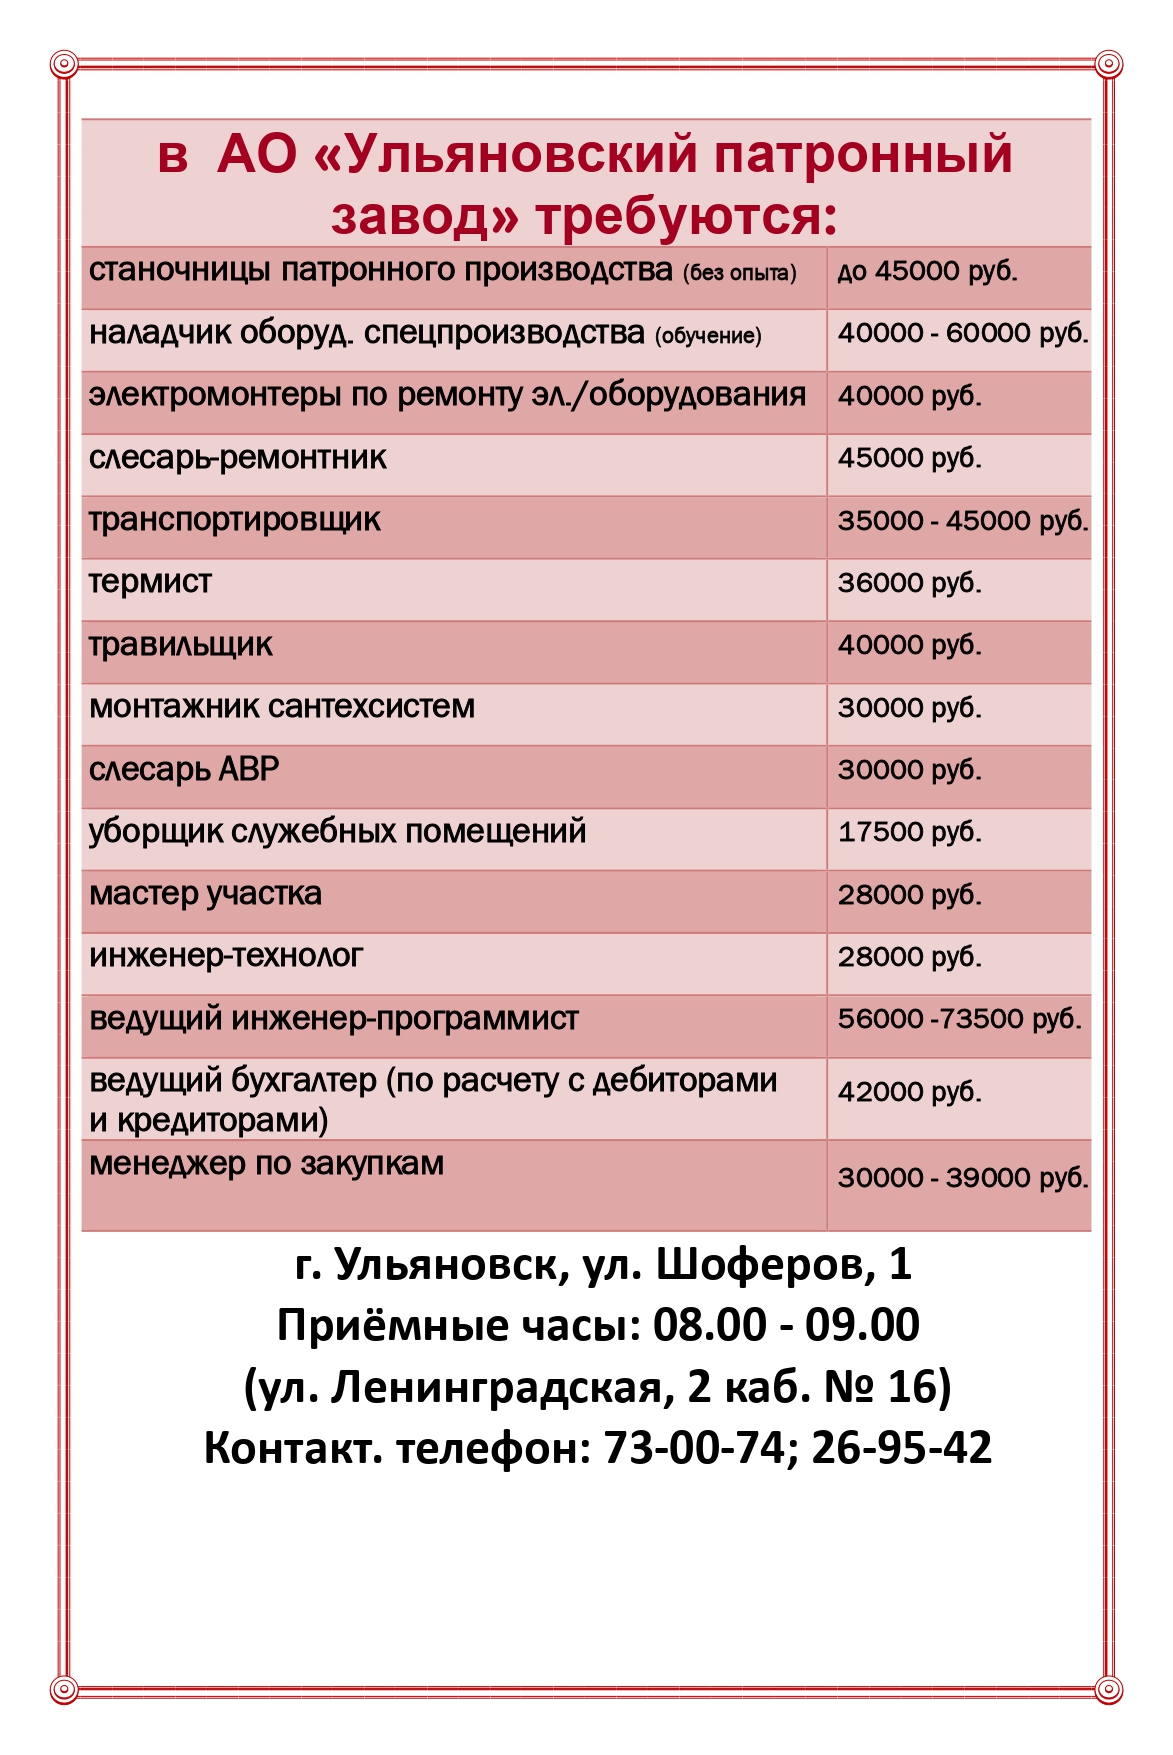 О кадровой потребности АО «Ульяновский патронный завод».